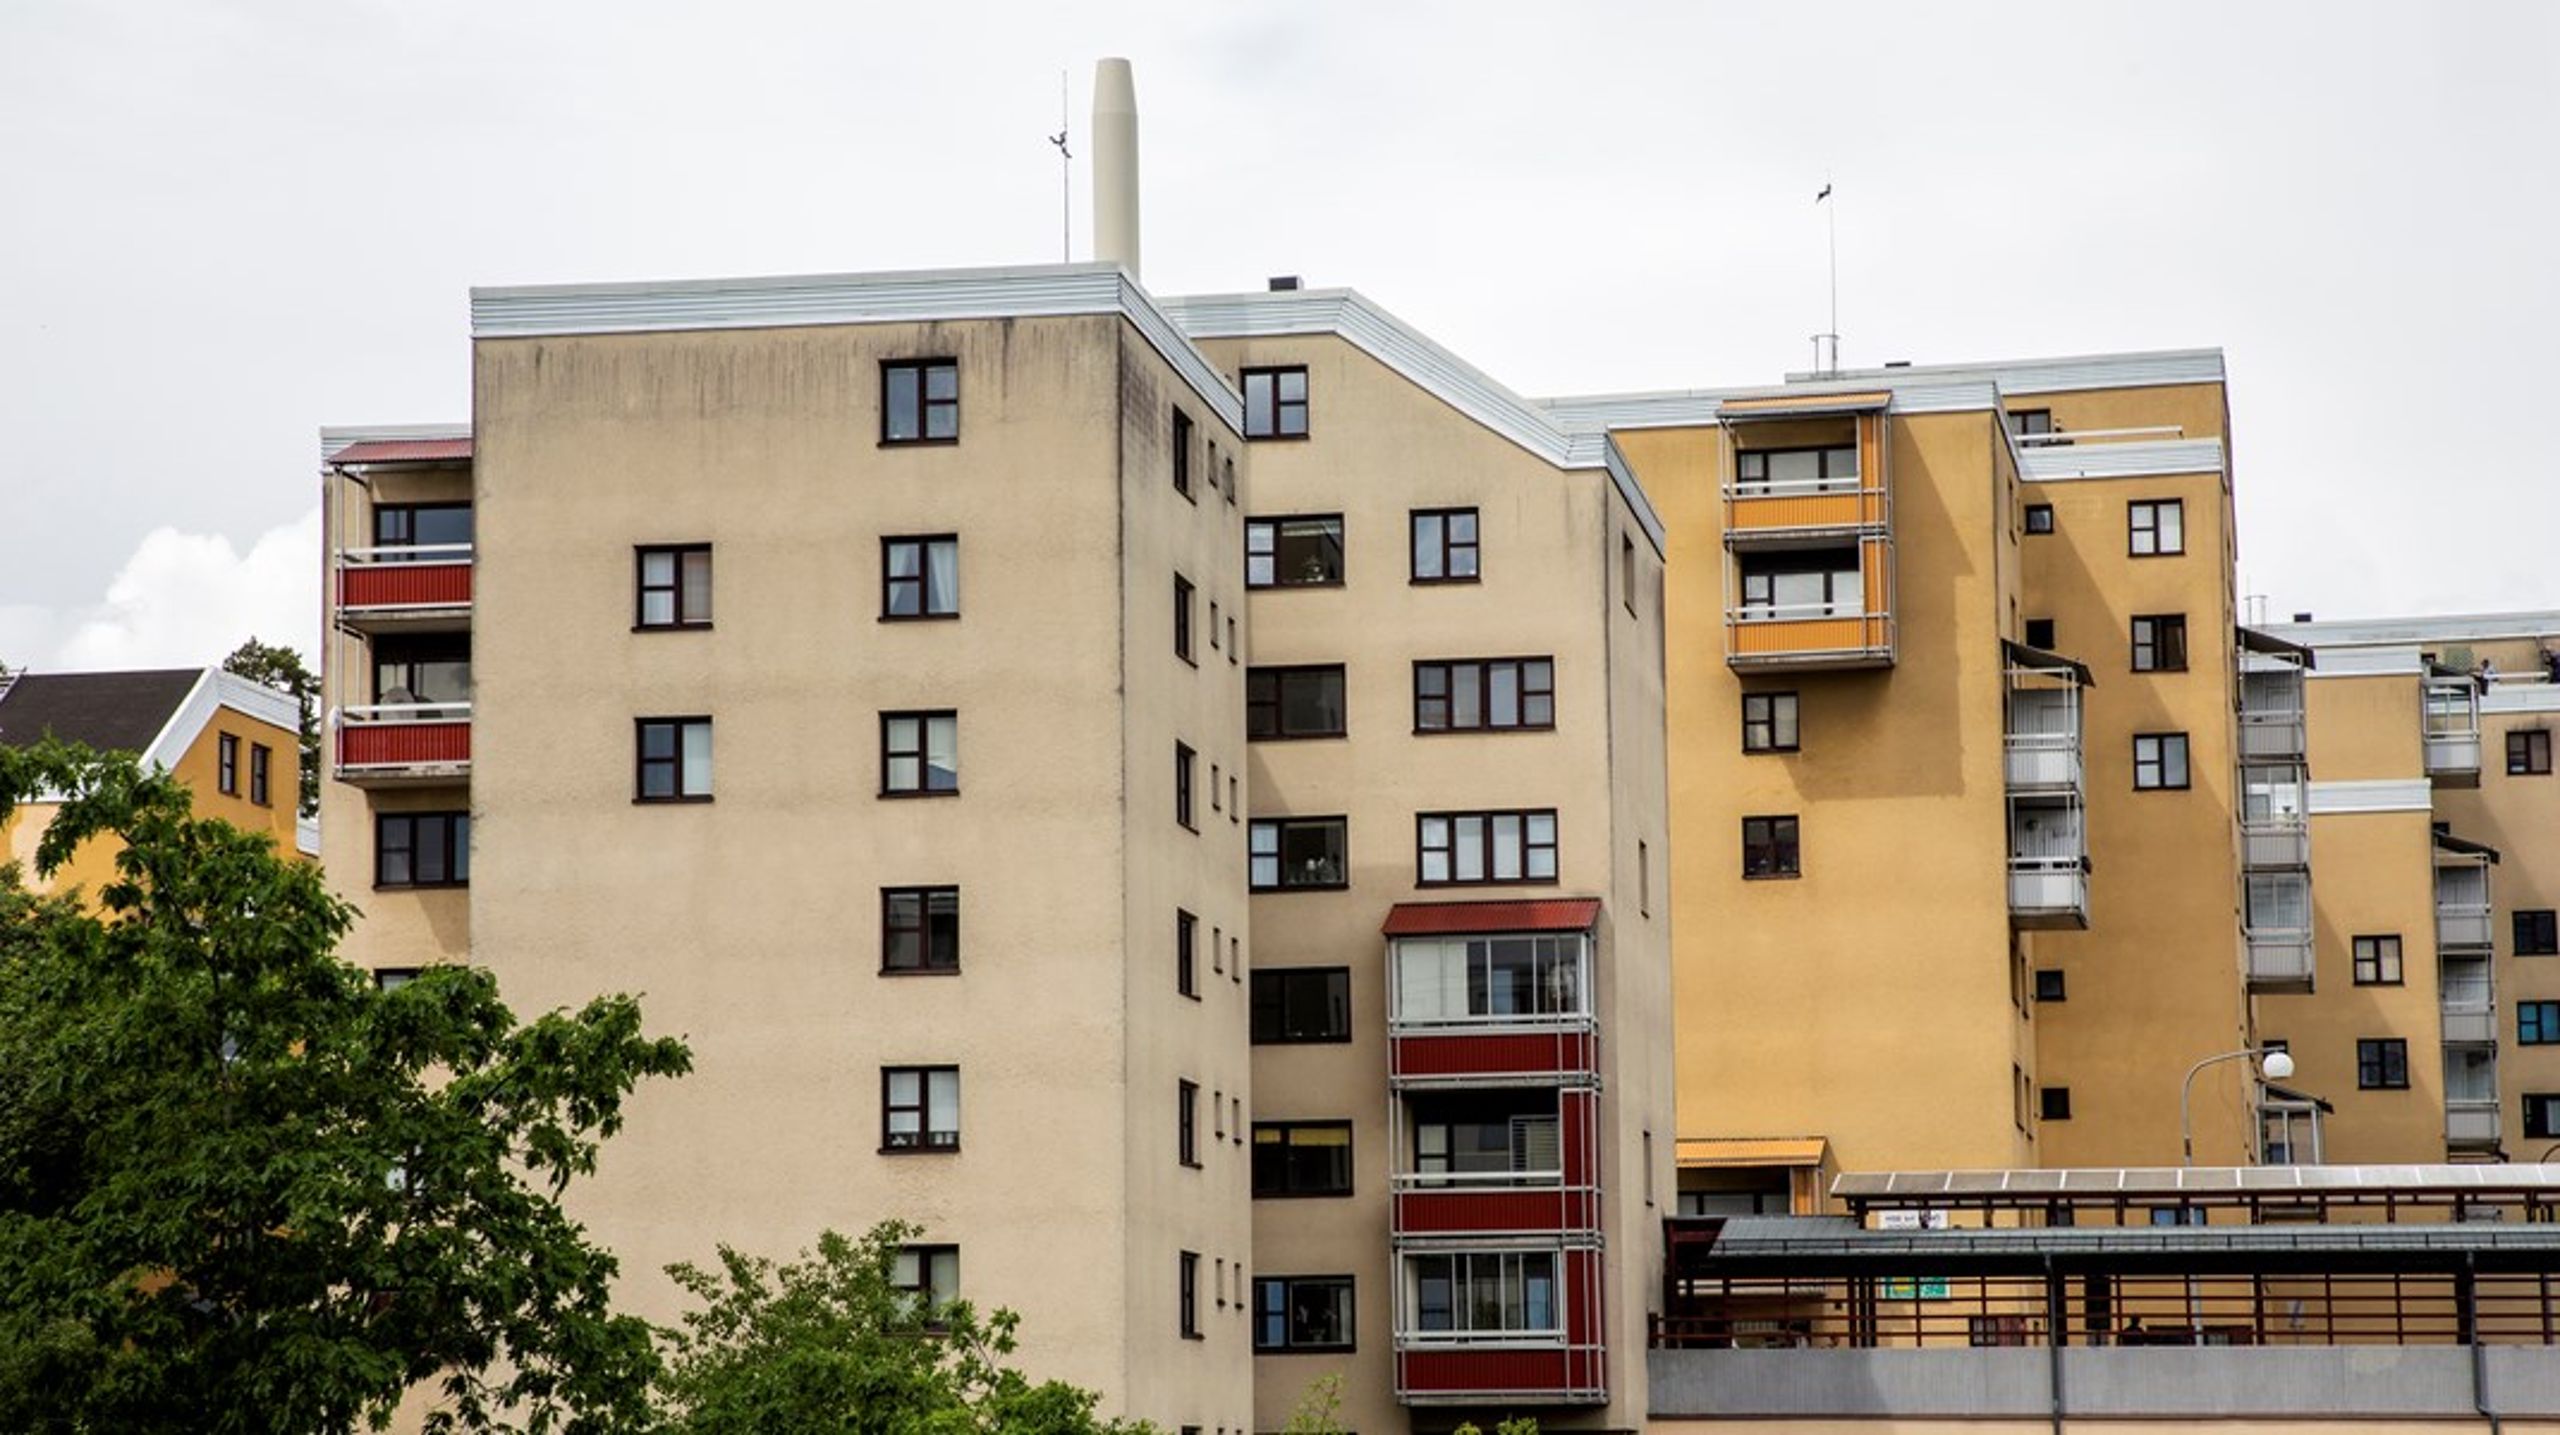 Av lägenheter i flerbostadshus är hyresrätter den vanligaste bostadstypen.